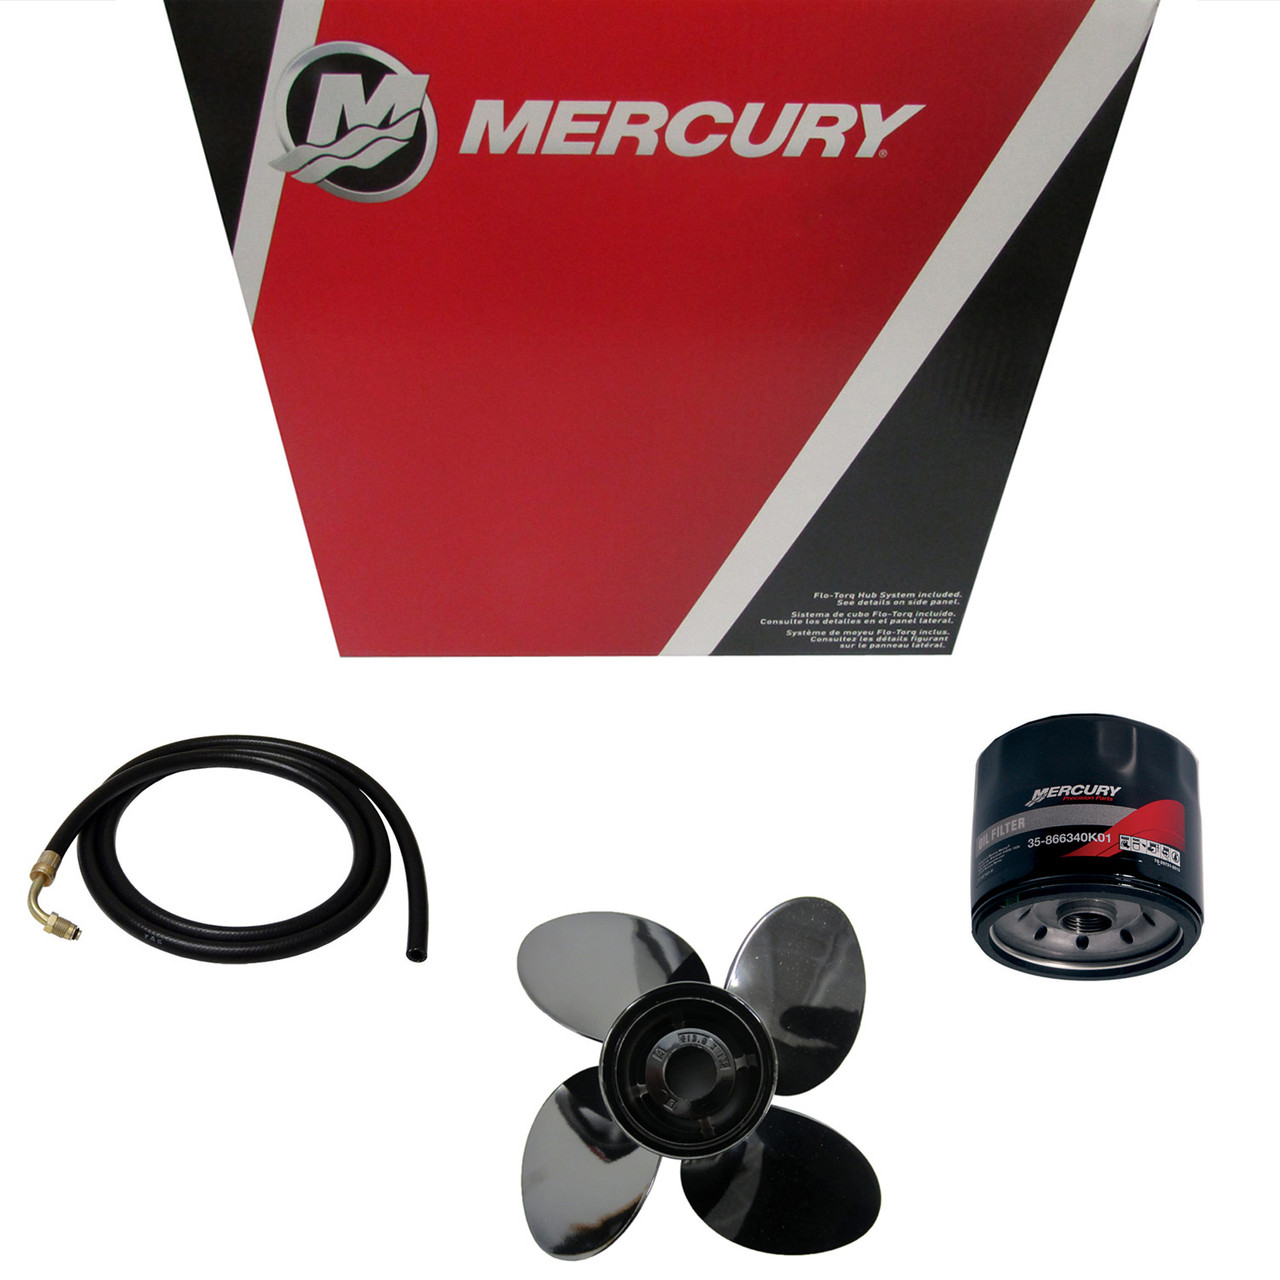 Mercury Marine / Mercruiser New OEM Choke Knob, 853724001